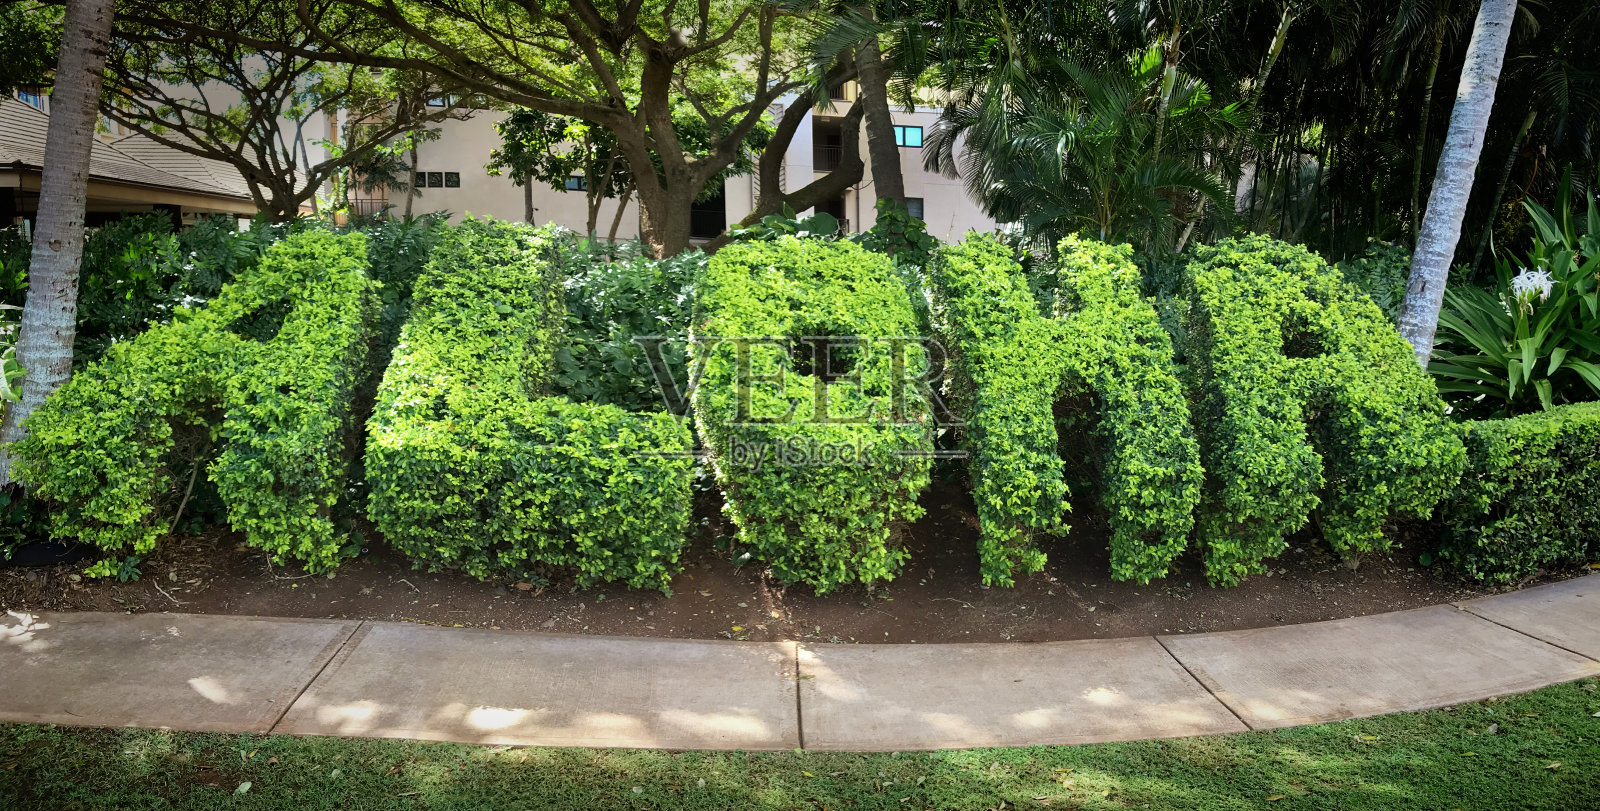 夏威夷考艾岛的阿罗哈修剪园照片摄影图片